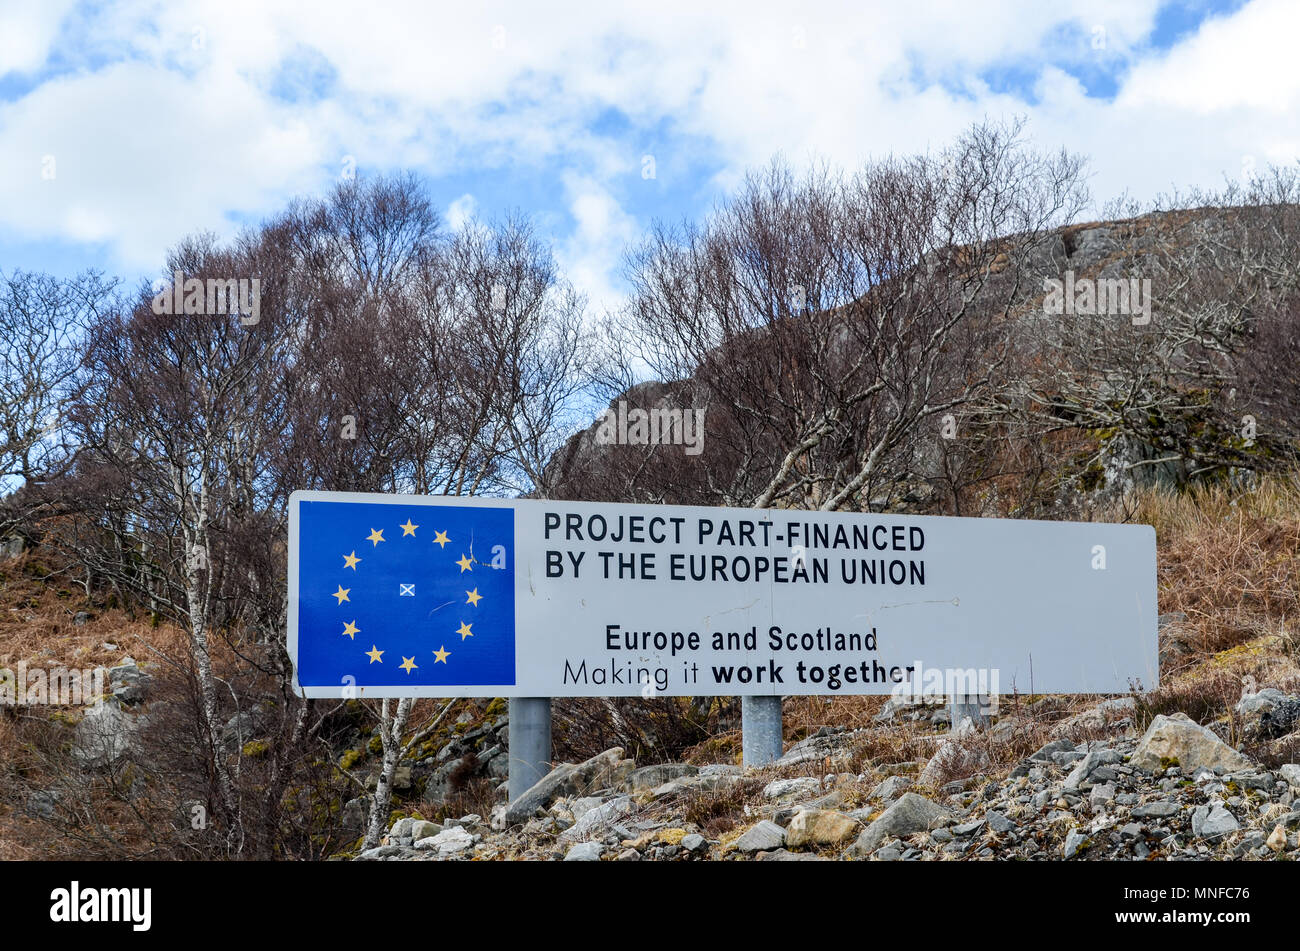 "L'Europa e la Scozia' : cartello stradale in Highland, Scozia (Mallaig), evidenziando la cooperazione tra la Scozia e l'Unione europea Foto Stock